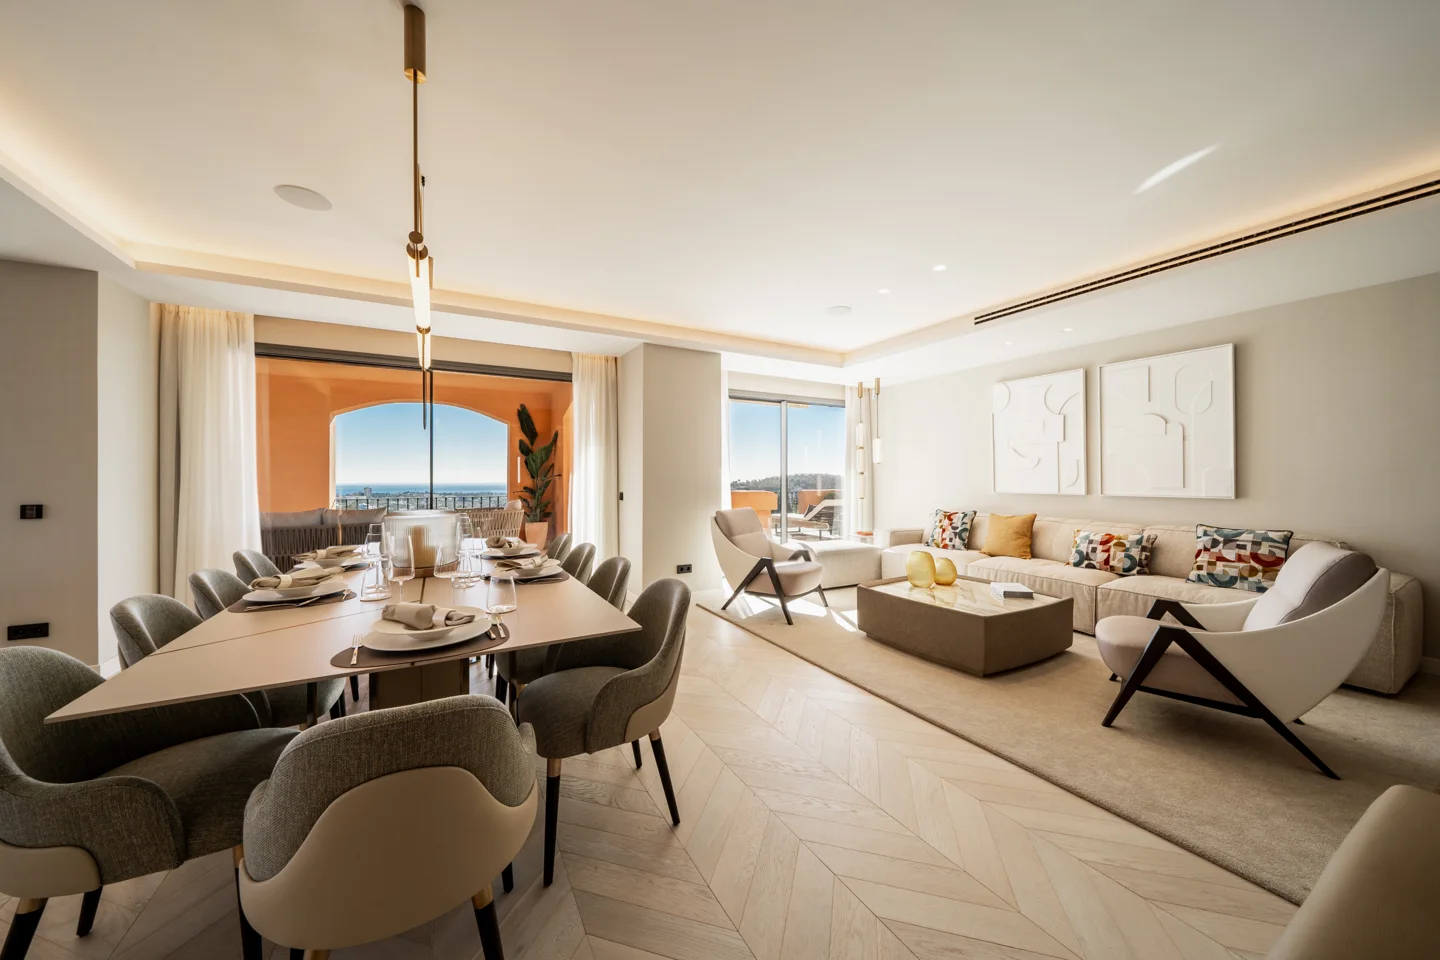 Nueva Andalucia: Exquisite 4-bedroom penthouse in luxury complex in La Cerquilla